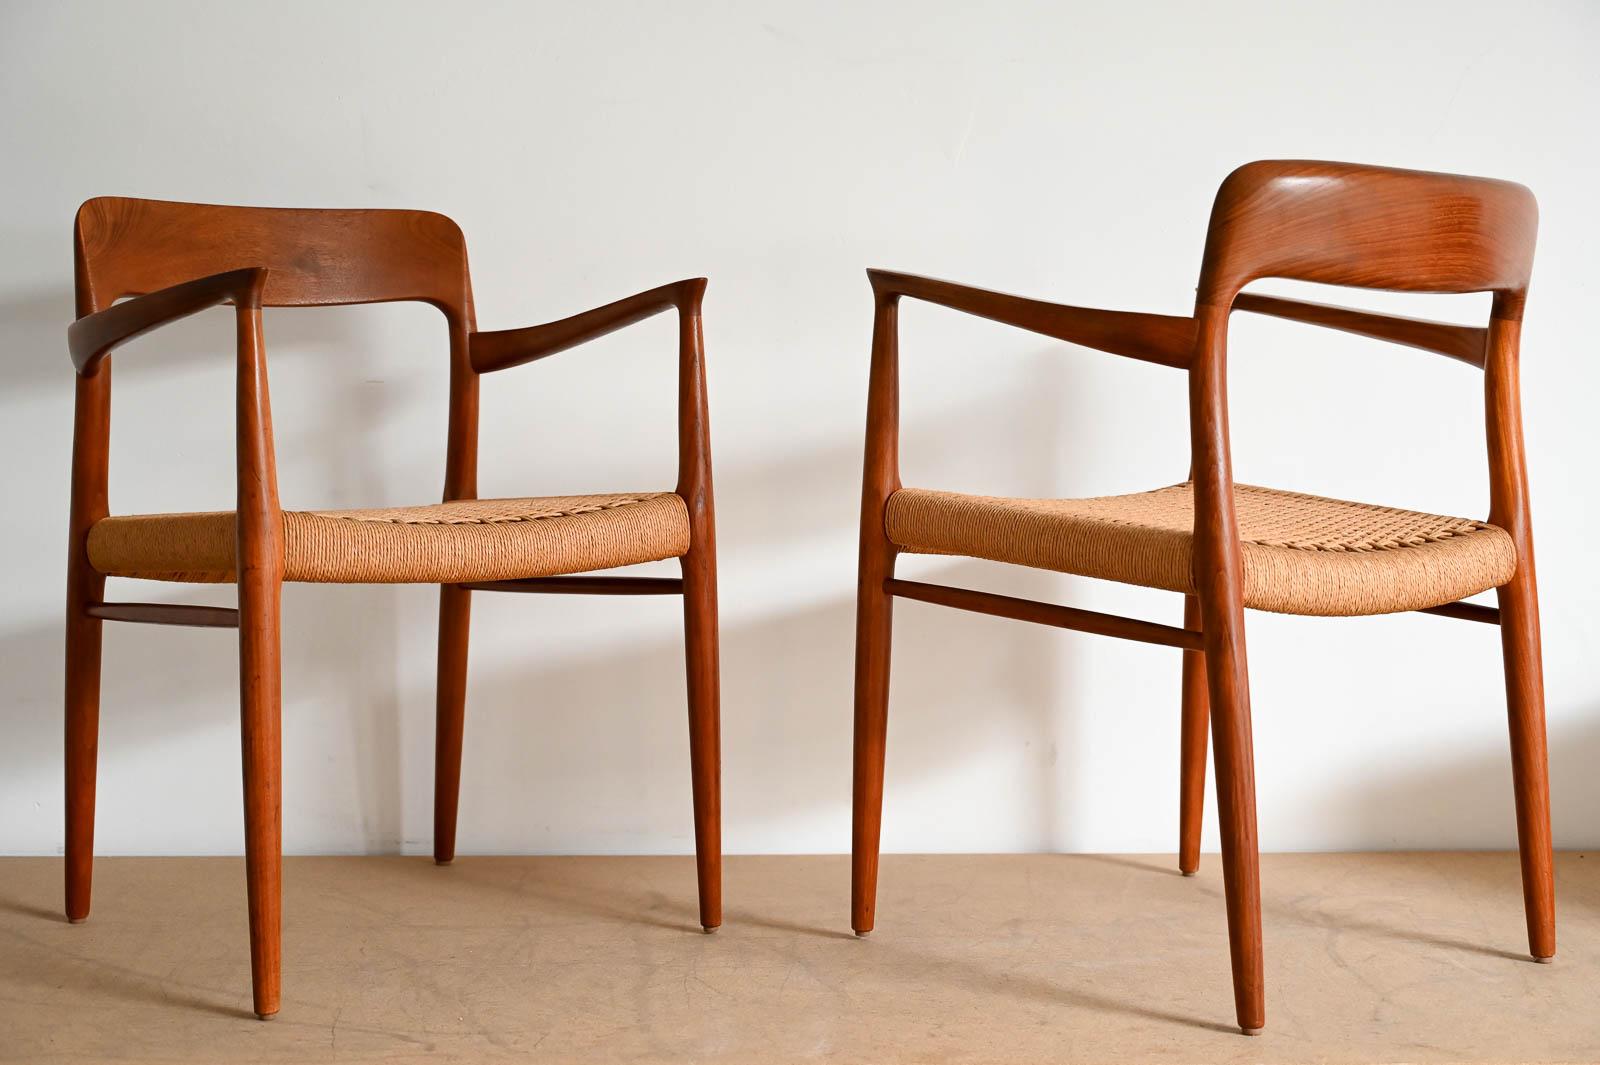 Paire de fauteuils Neils Moller modèle 77, vers 1960.  Belle paire originale de fauteuils Neils Moller en teck sculpté avec assise en carton tissé.  Excellent état d'origine que nous évaluons à 9/10 avec pratiquement aucune usure.  Cette paire est